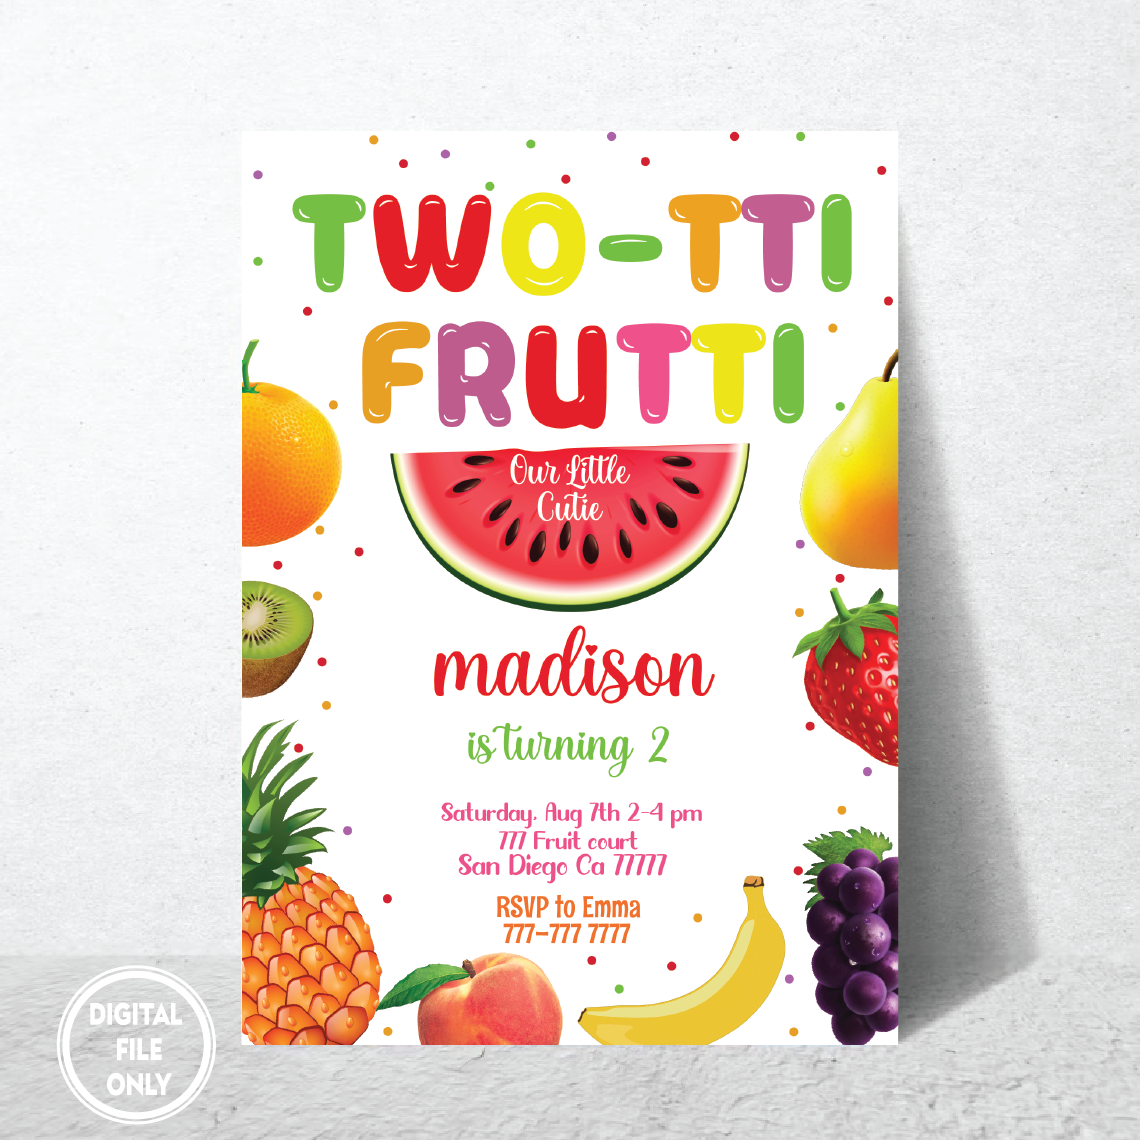 Personalized File Twotti Frutti Invitation, Twotti Frutti Invites, Instant Download Twotti Frutti Invitations, PNG File Only